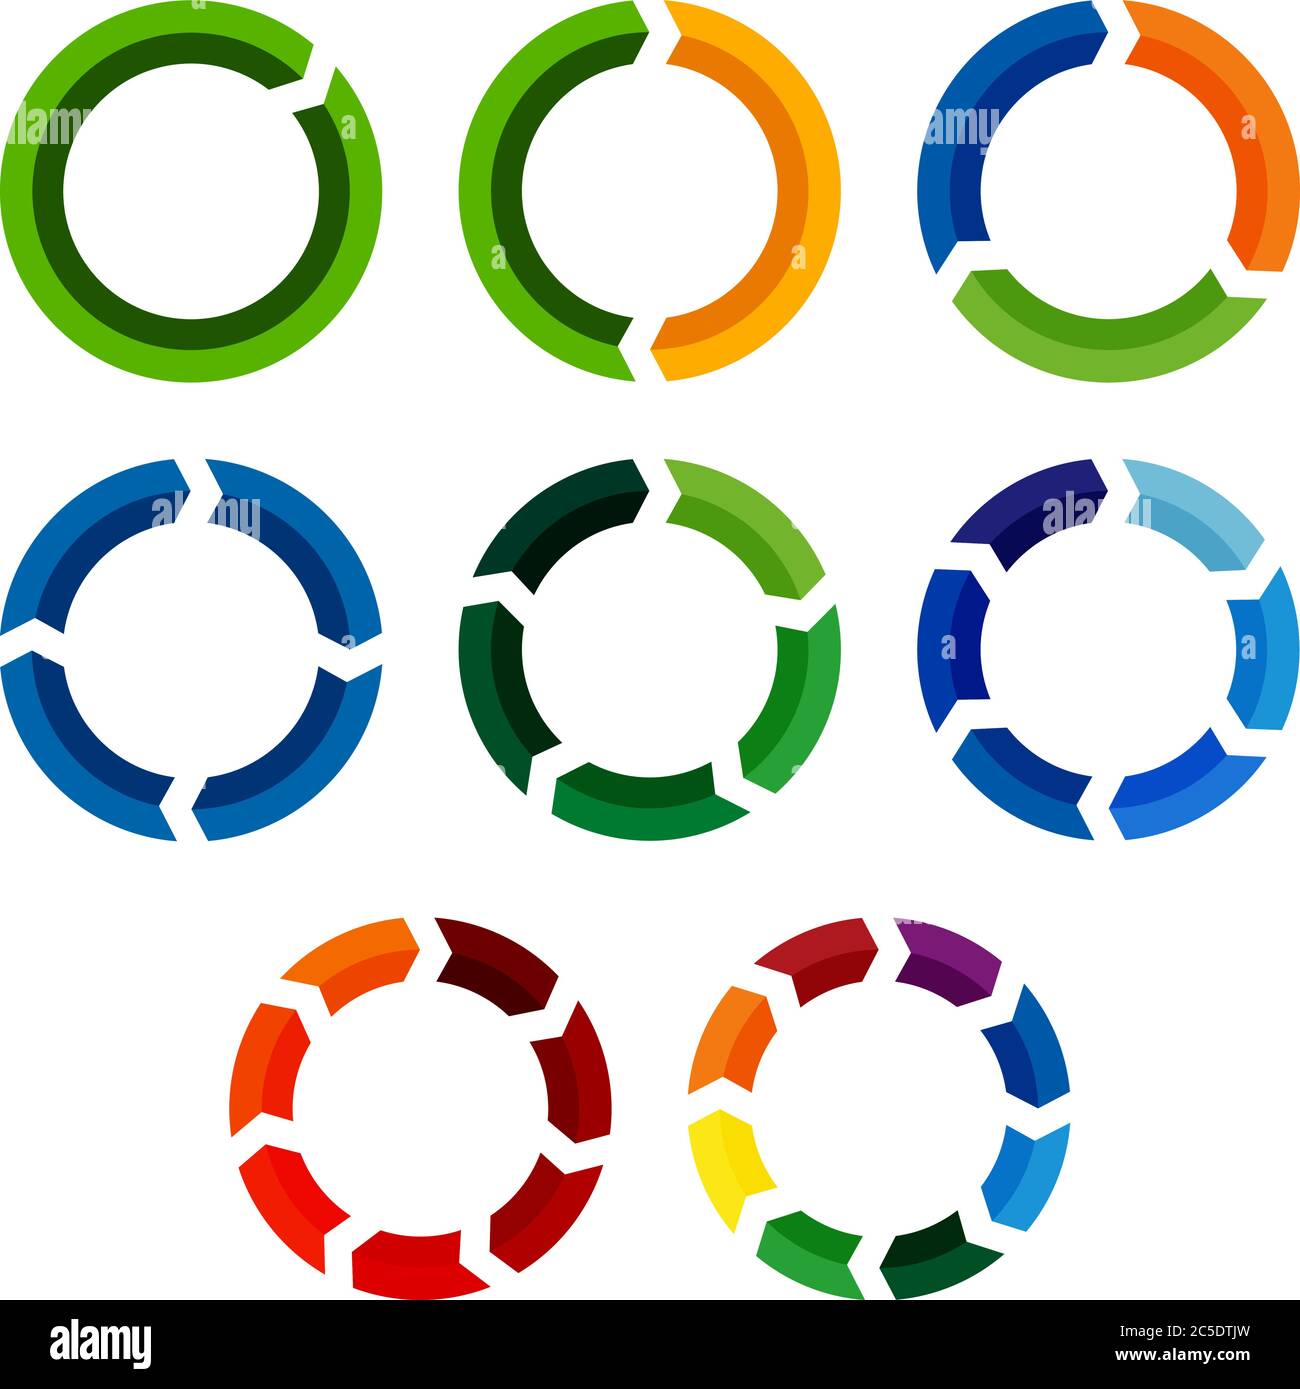 circular arrow diagram or circle graph icon set with 1 to 8 segments vector illustration Stock Vector